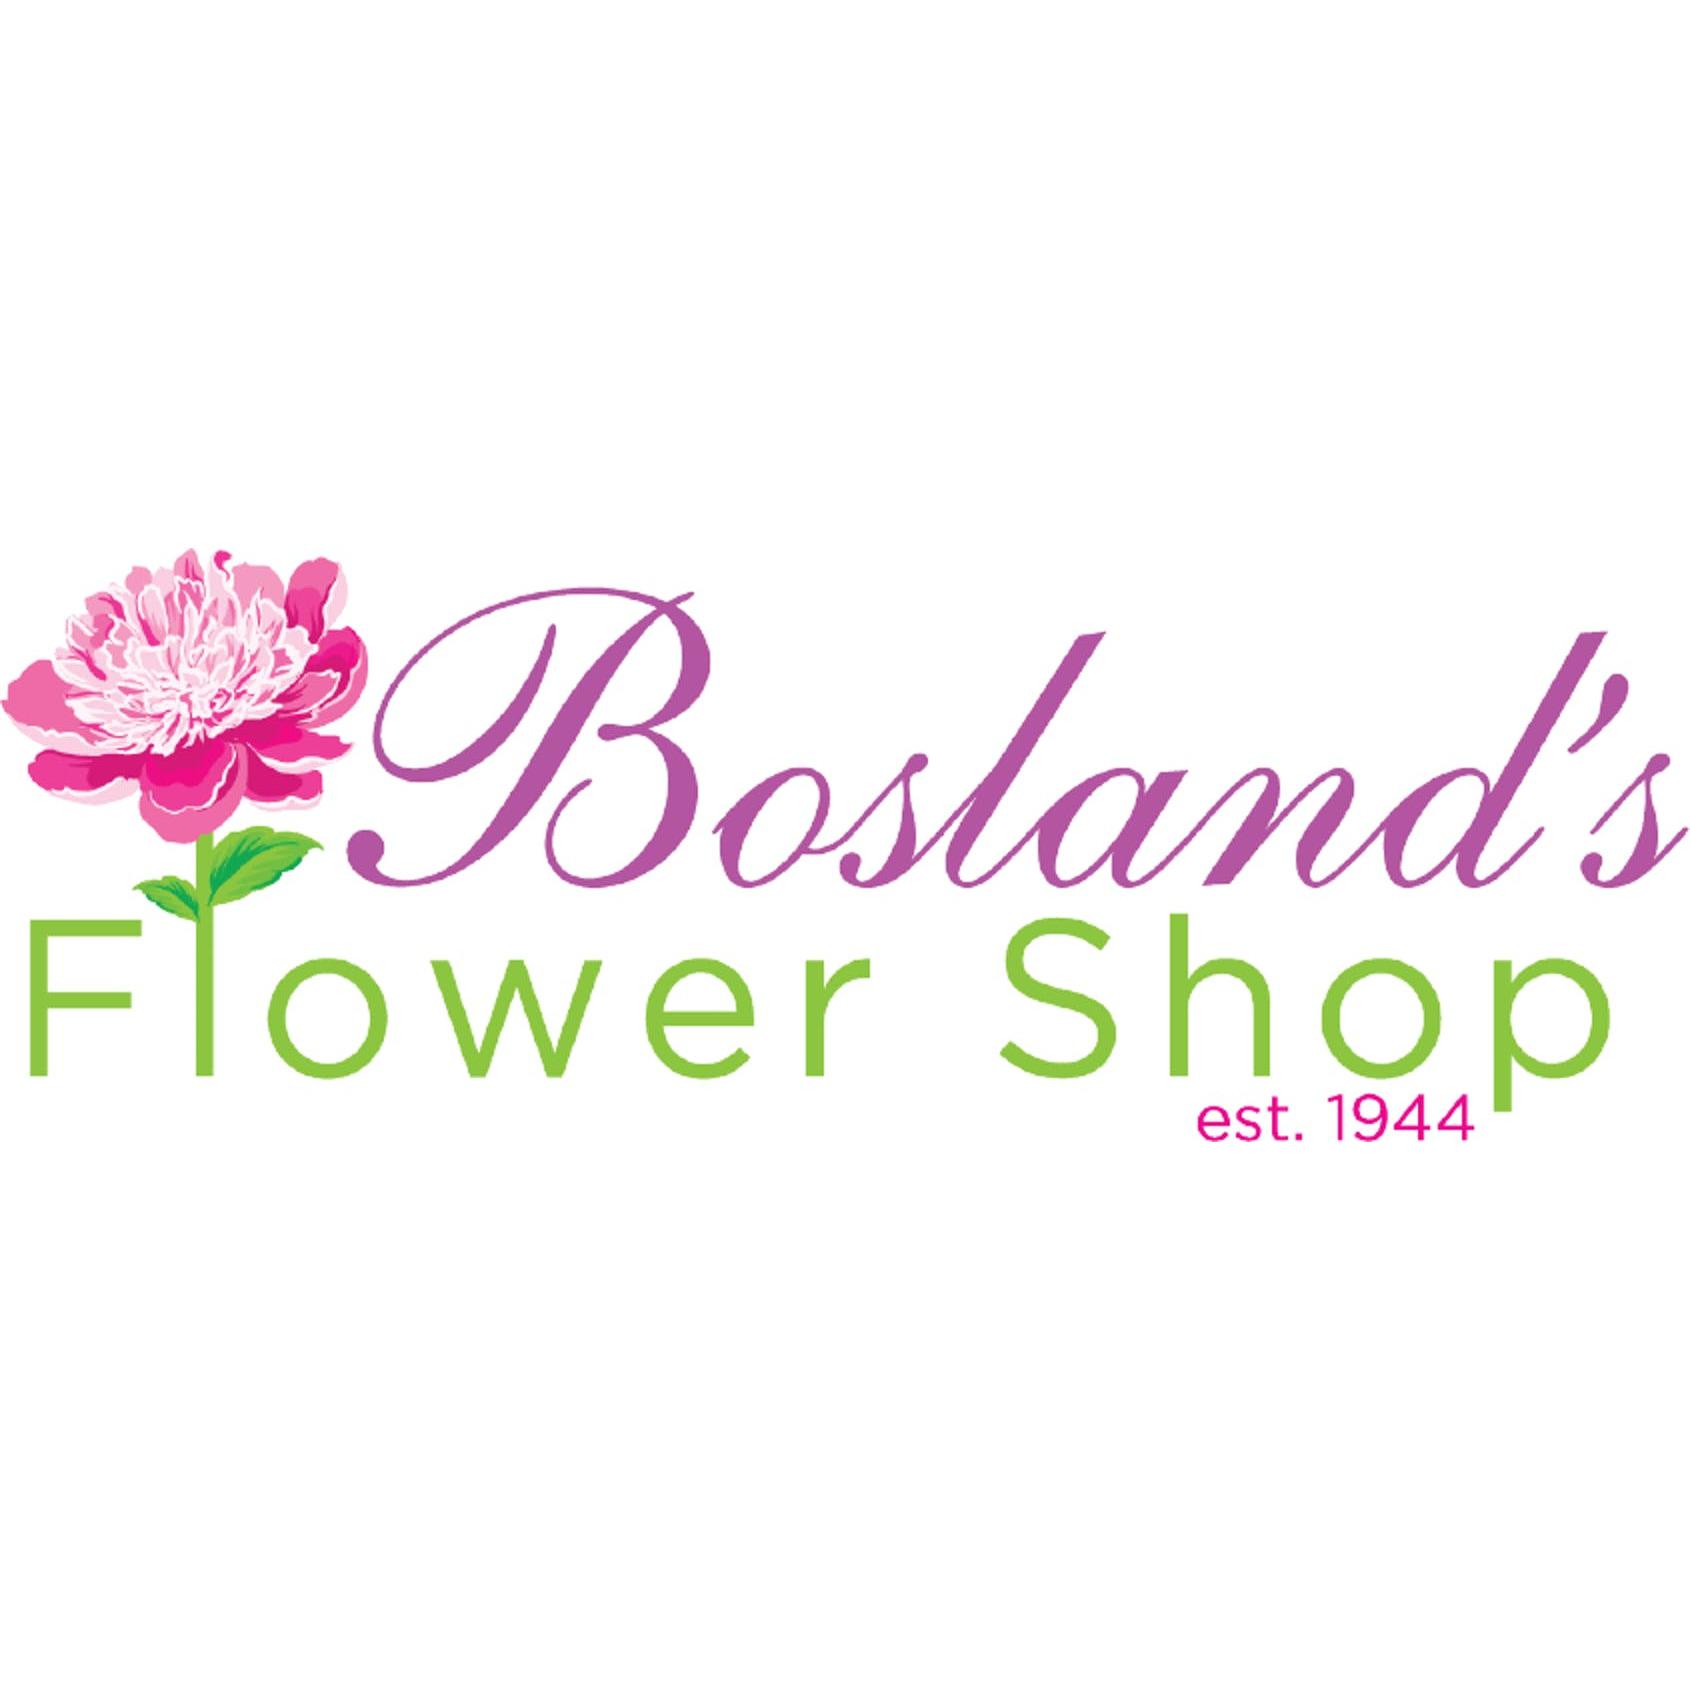 Bosland's Flower Shop - Wayne, NJ 07470 - (973)942-3838 | ShowMeLocal.com